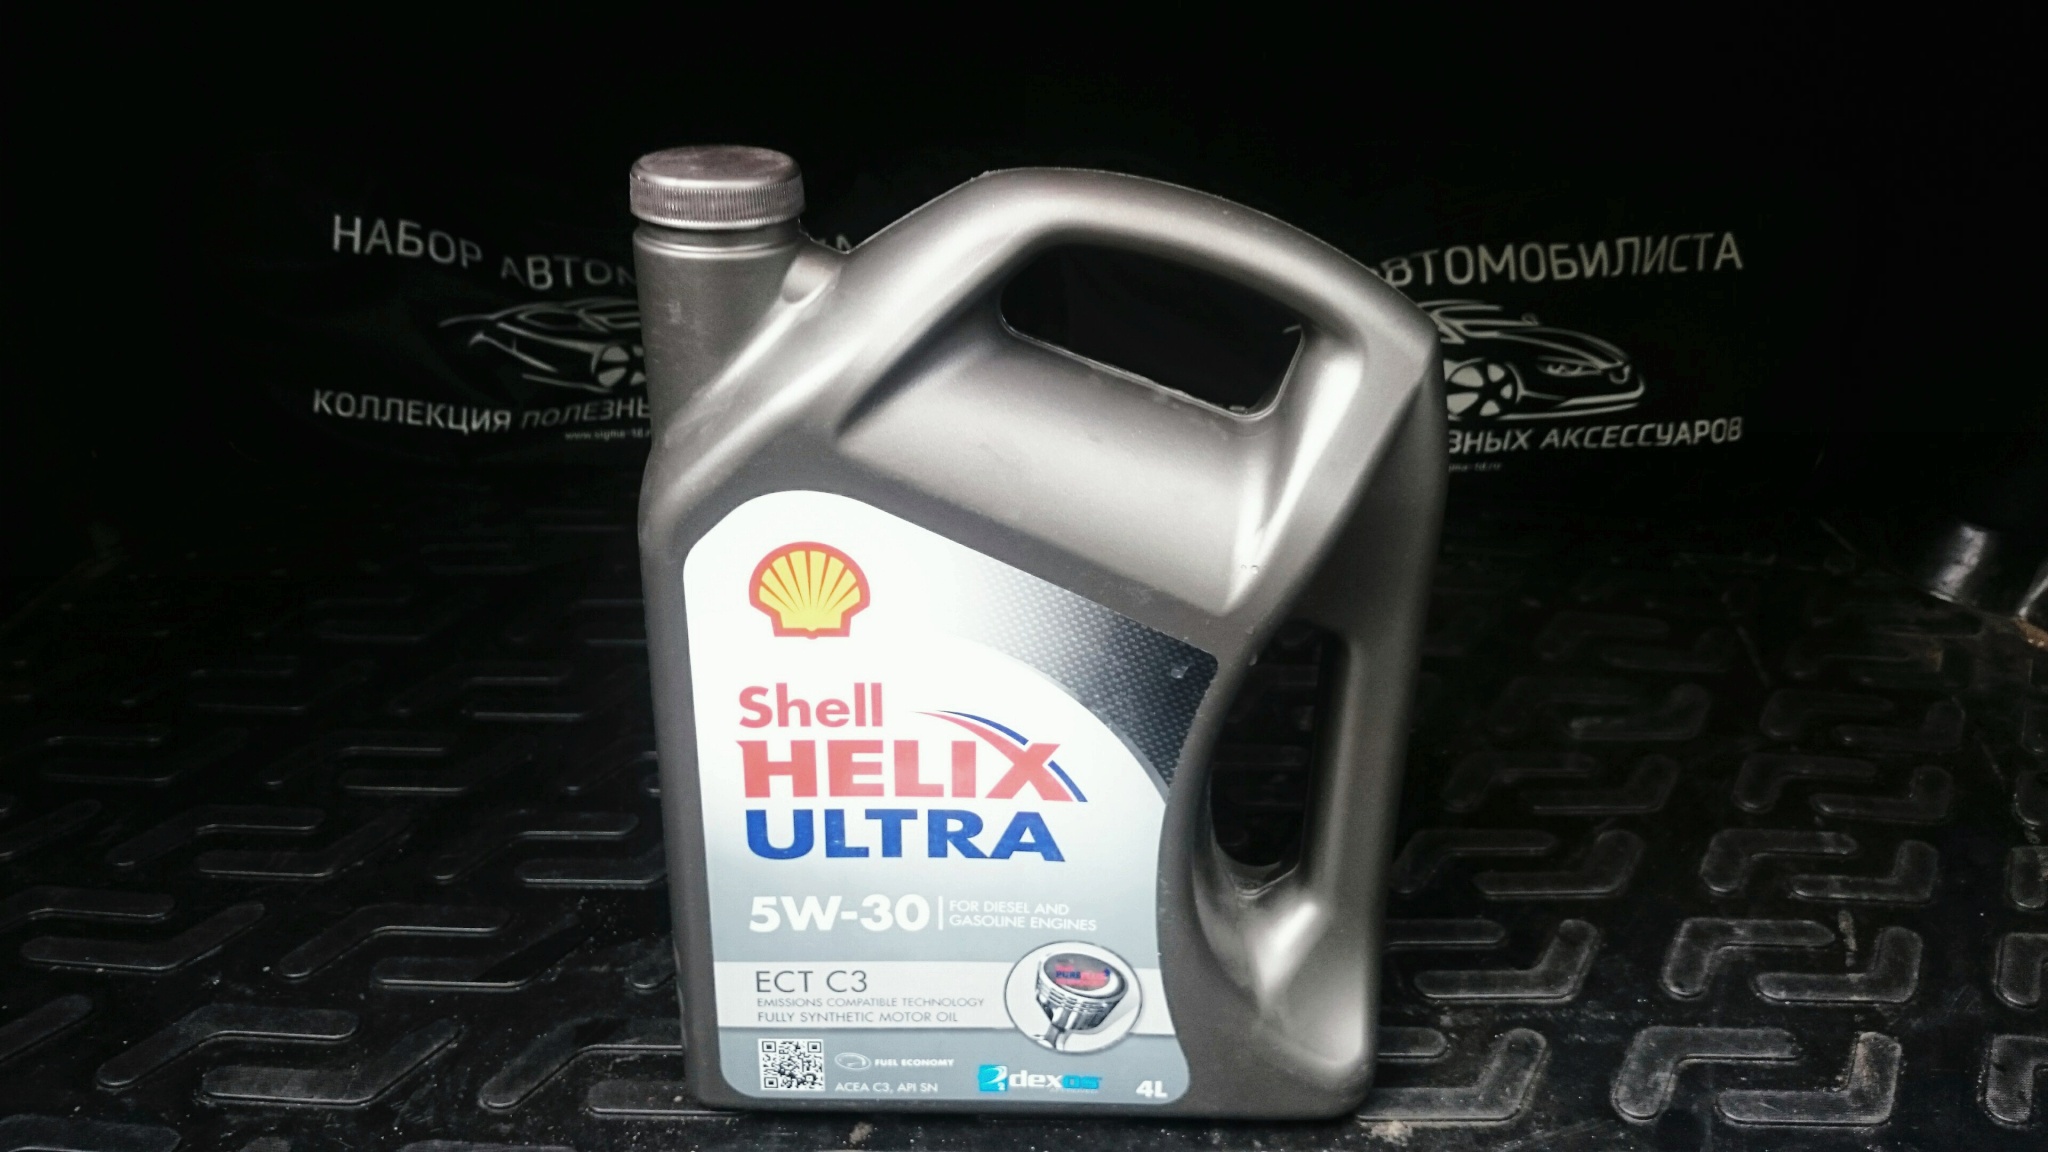 Shell Helix Ultra ect c3 5w-30 4 л. Helix Ultra ect c3 5w-30. Shell Helix Ultra ect 5w30 c3. Shell Helix Ultra ect c3 5w30 200 литров. Масло shell ect 5w30